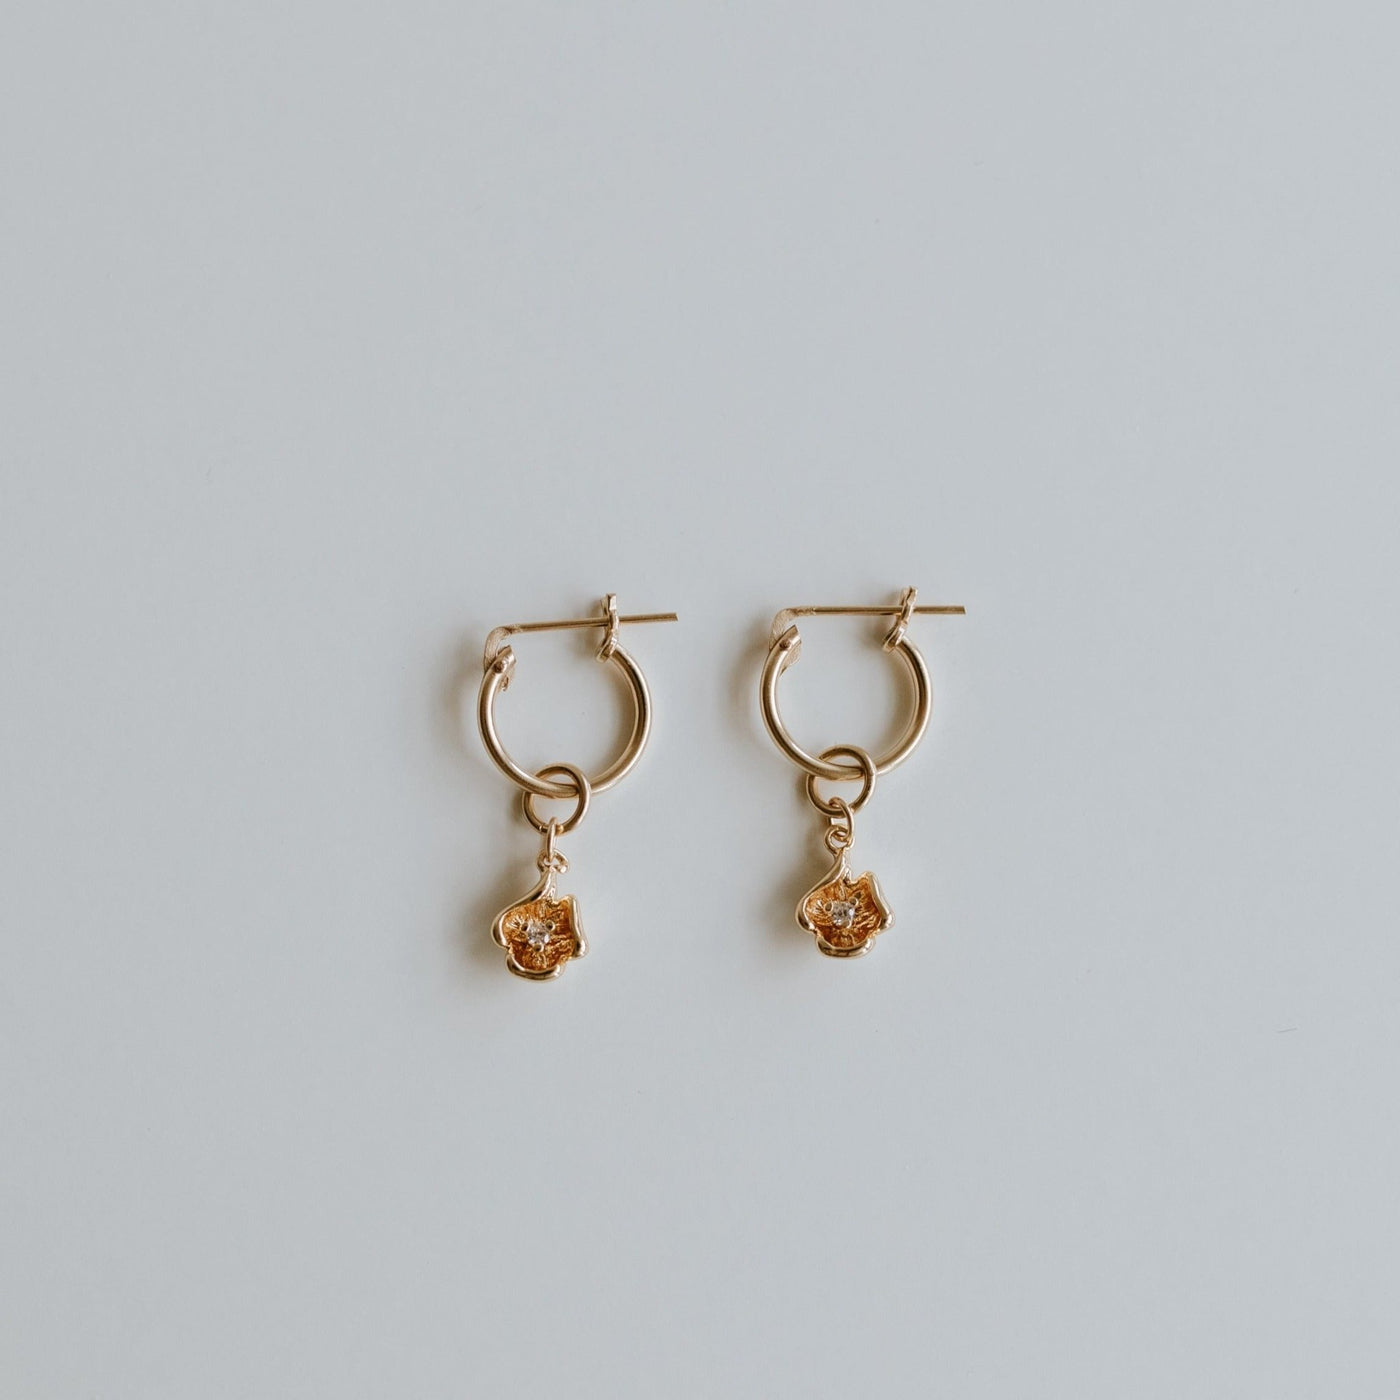 Queenstown Earrings - Jillian Leigh Jewellery - earrings